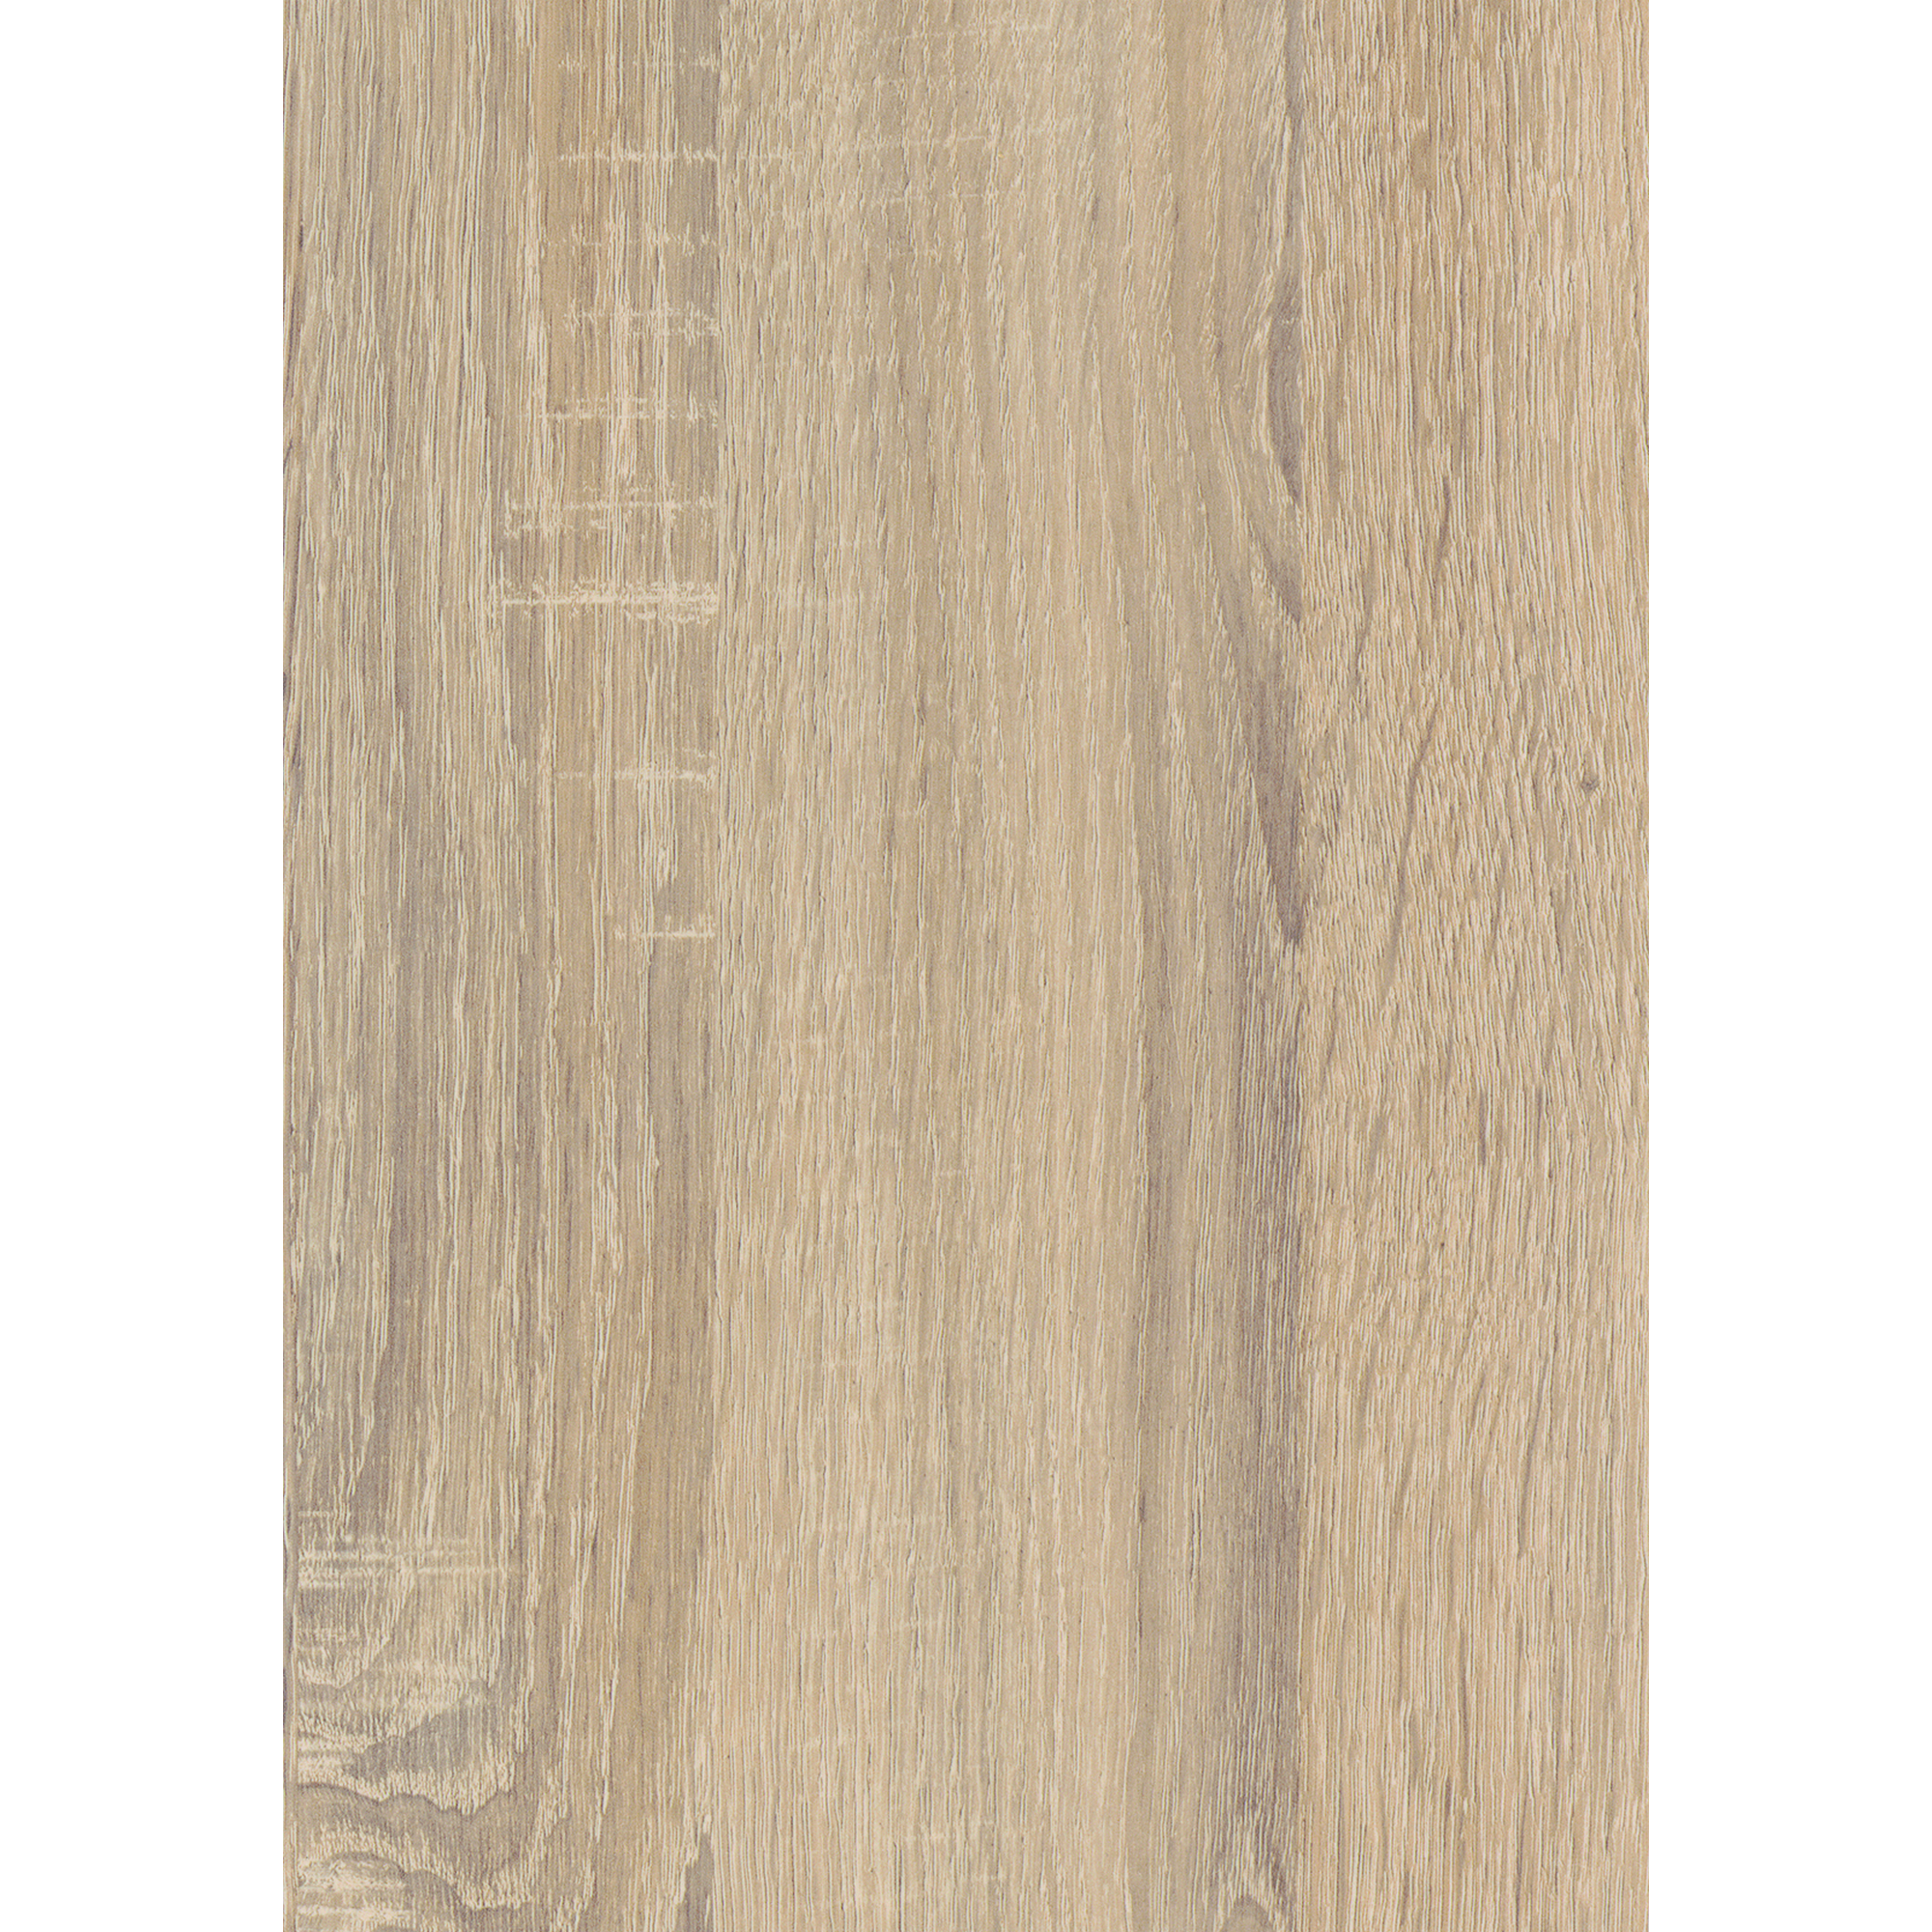 Küchenrückwand '34038/34232' Sonoma Eiche hell beige/Arizona Pine braun, beidseitiges Dekor 4100 x 640 x 15 mm + product picture